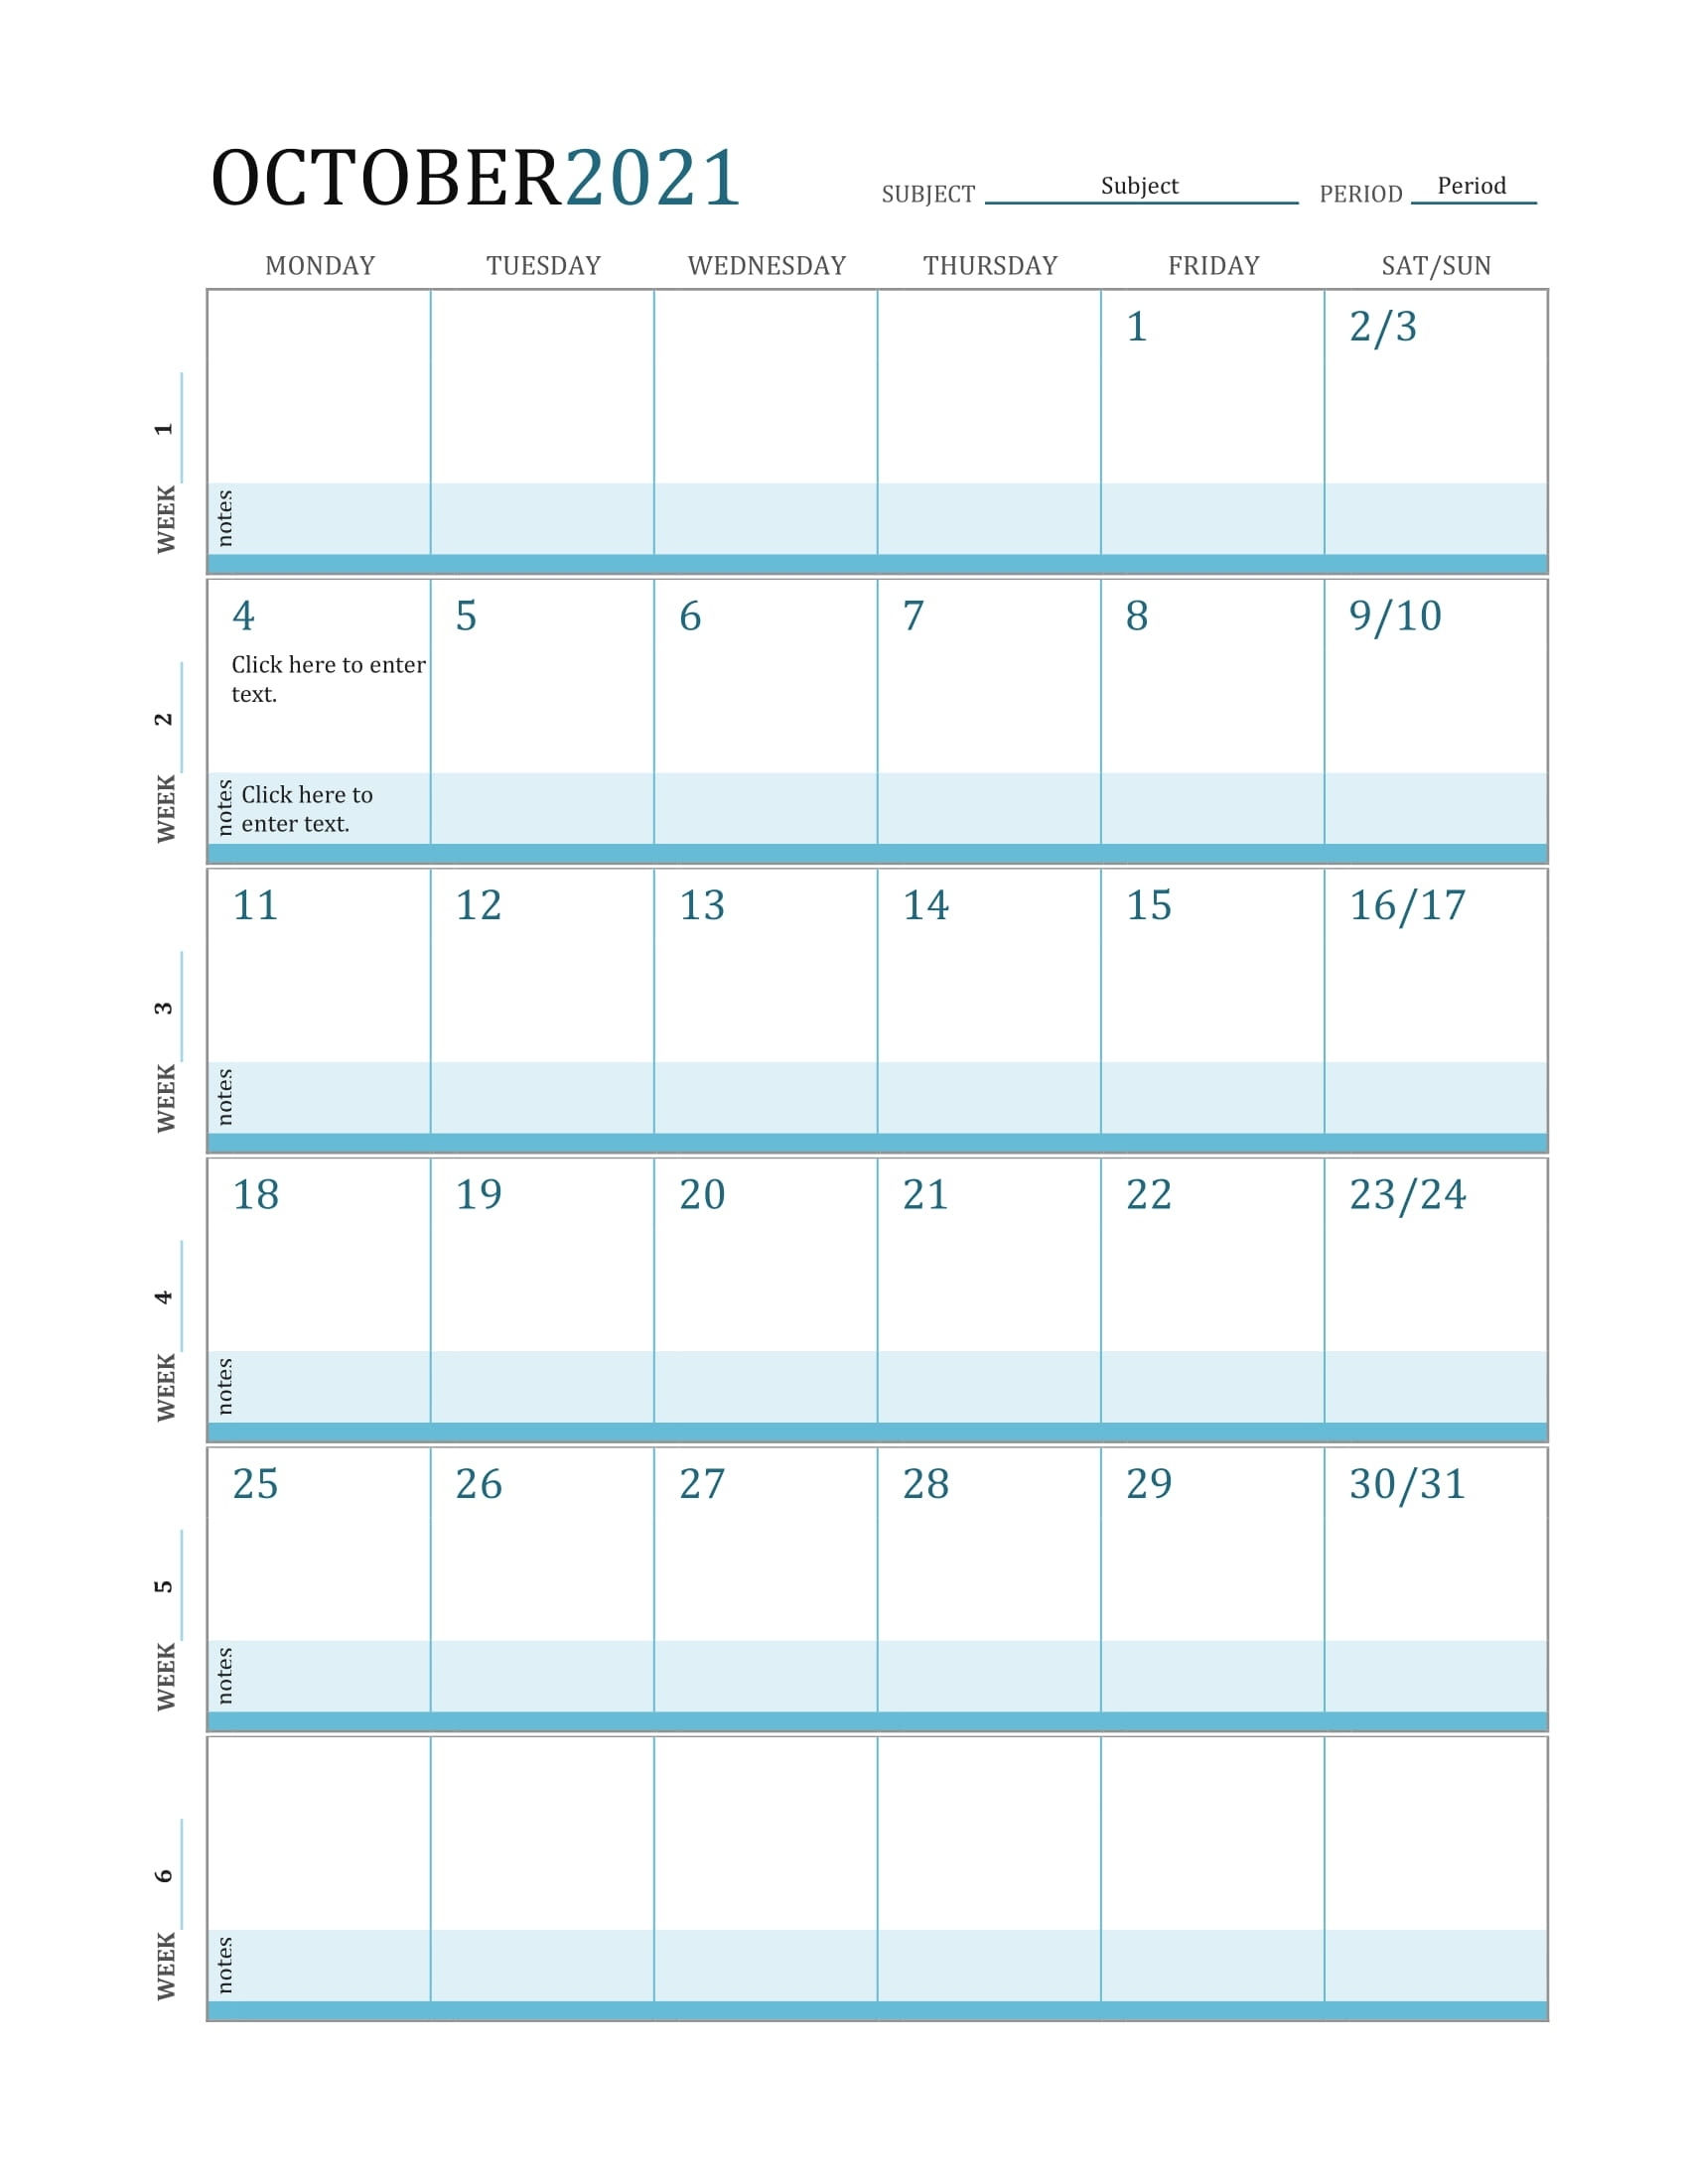 October 2021 Calendar - Printable Calendar Template 2020 2021 Calendar For October 2021